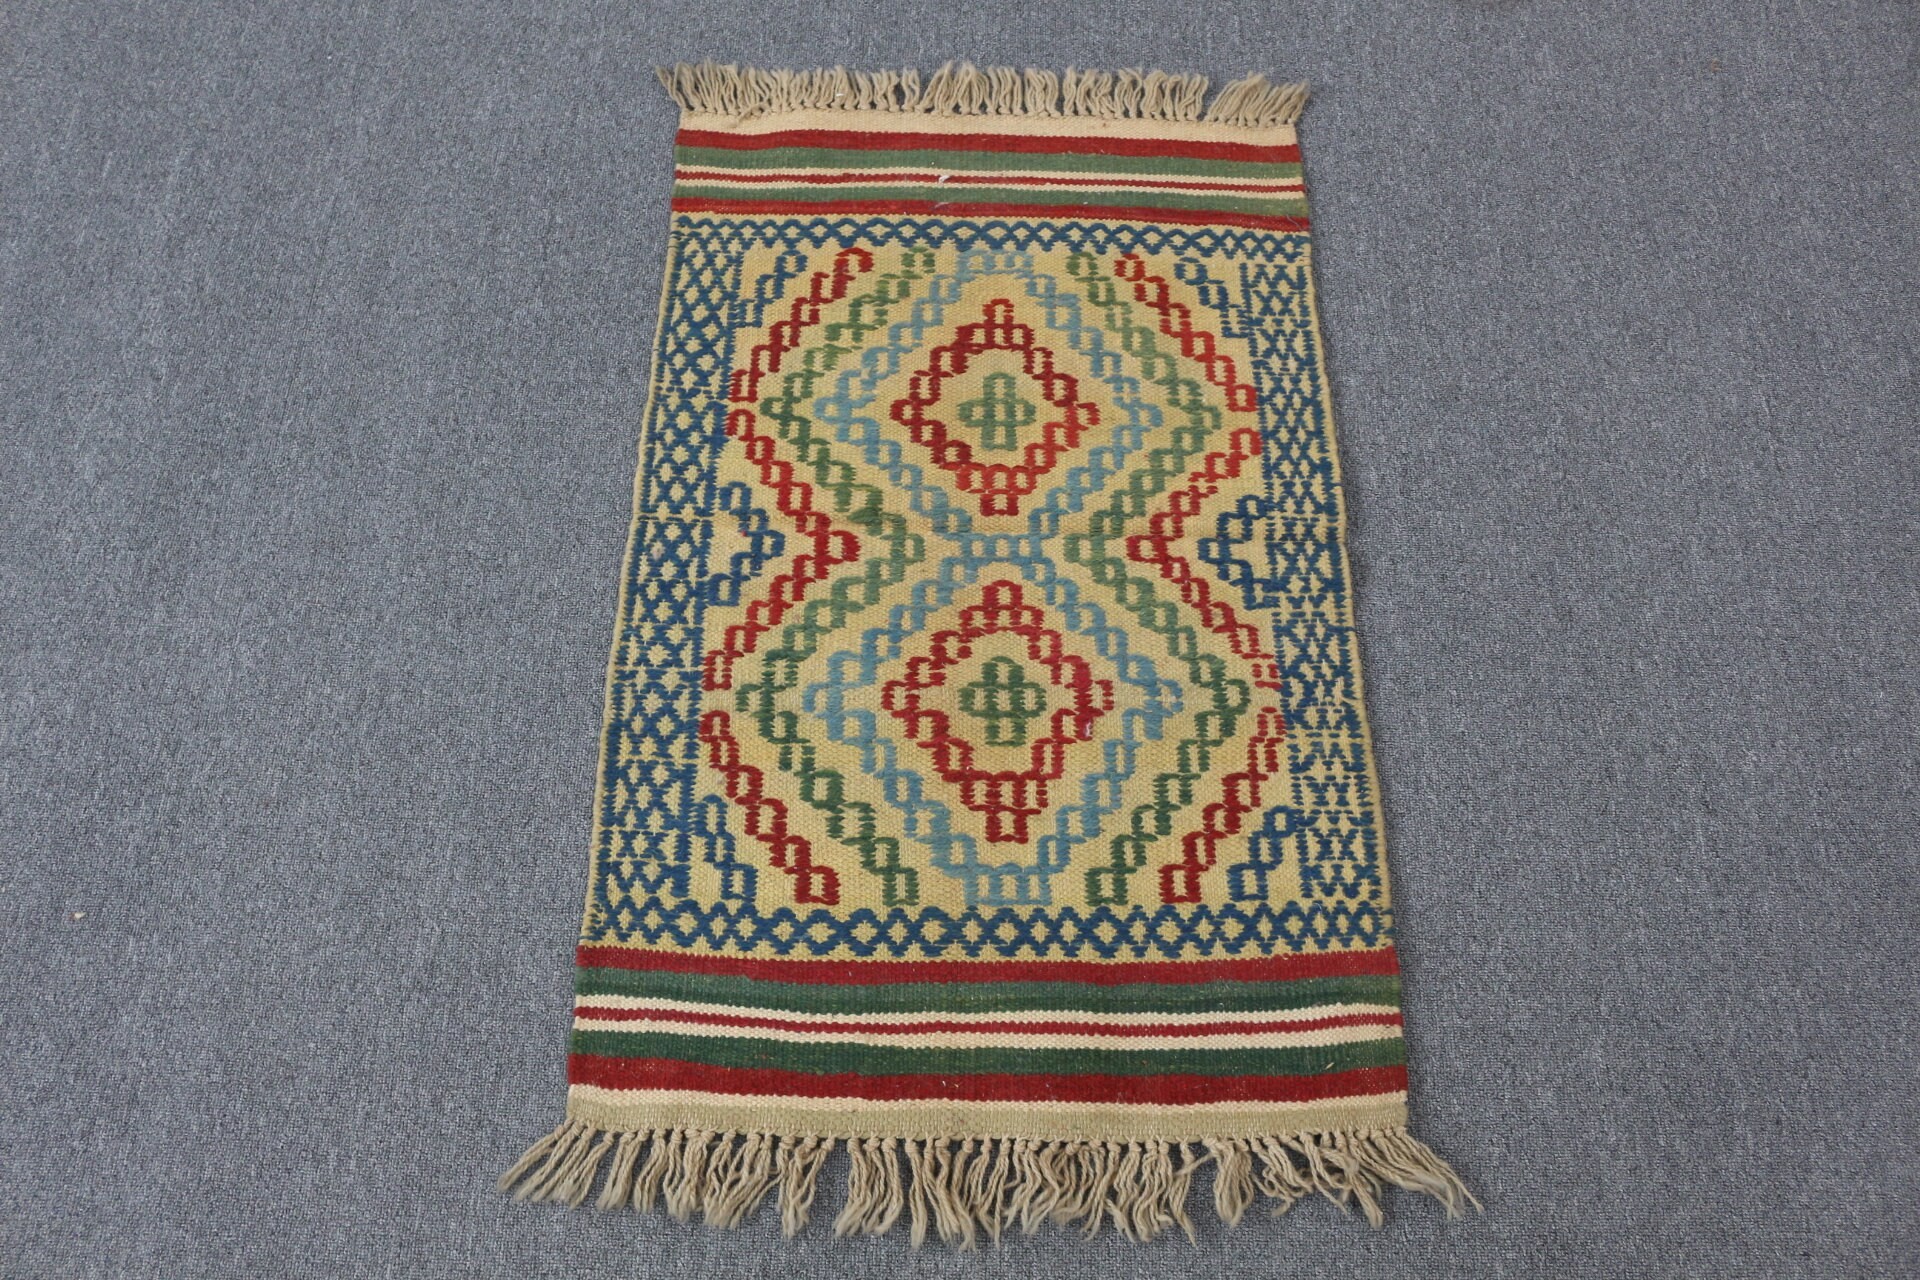 Tribal Rug, Kilim, Vintage Rug, Anatolian Rug, Bedroom Rug, Beige Moroccan Rug, Bath Rug, Moroccan Rugs, 1.9x3.1 ft Small Rugs, Turkish Rug